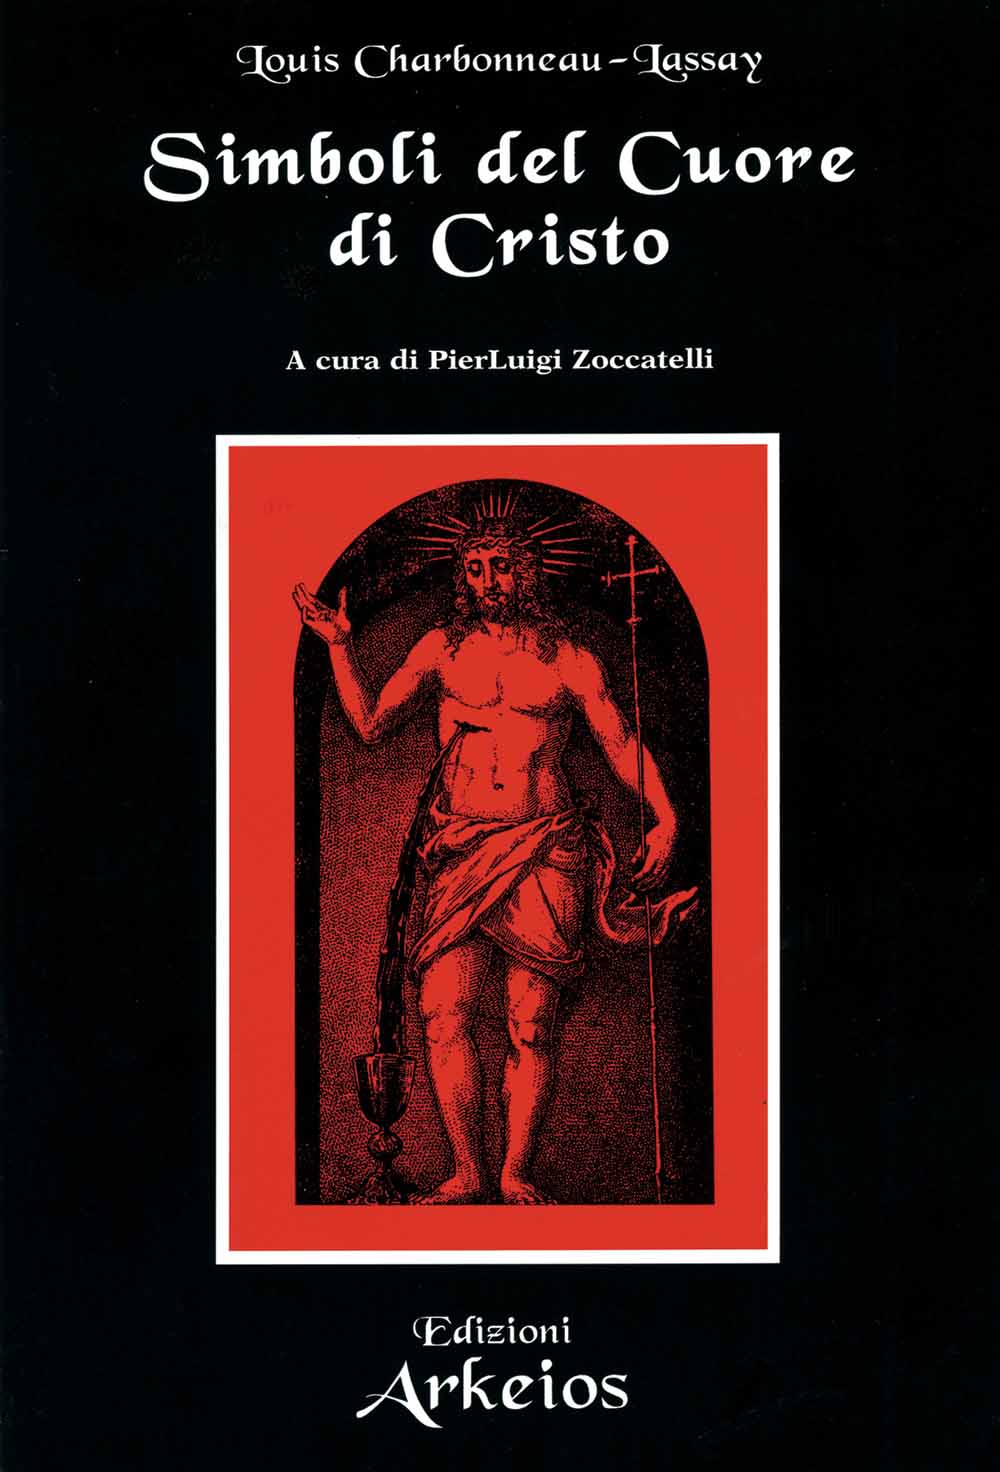 Libri Charbonneau Lassay Louis - Simboli Del Cuore Di Cristo NUOVO SIGILLATO, EDIZIONE DEL 01/04/2003 SUBITO DISPONIBILE